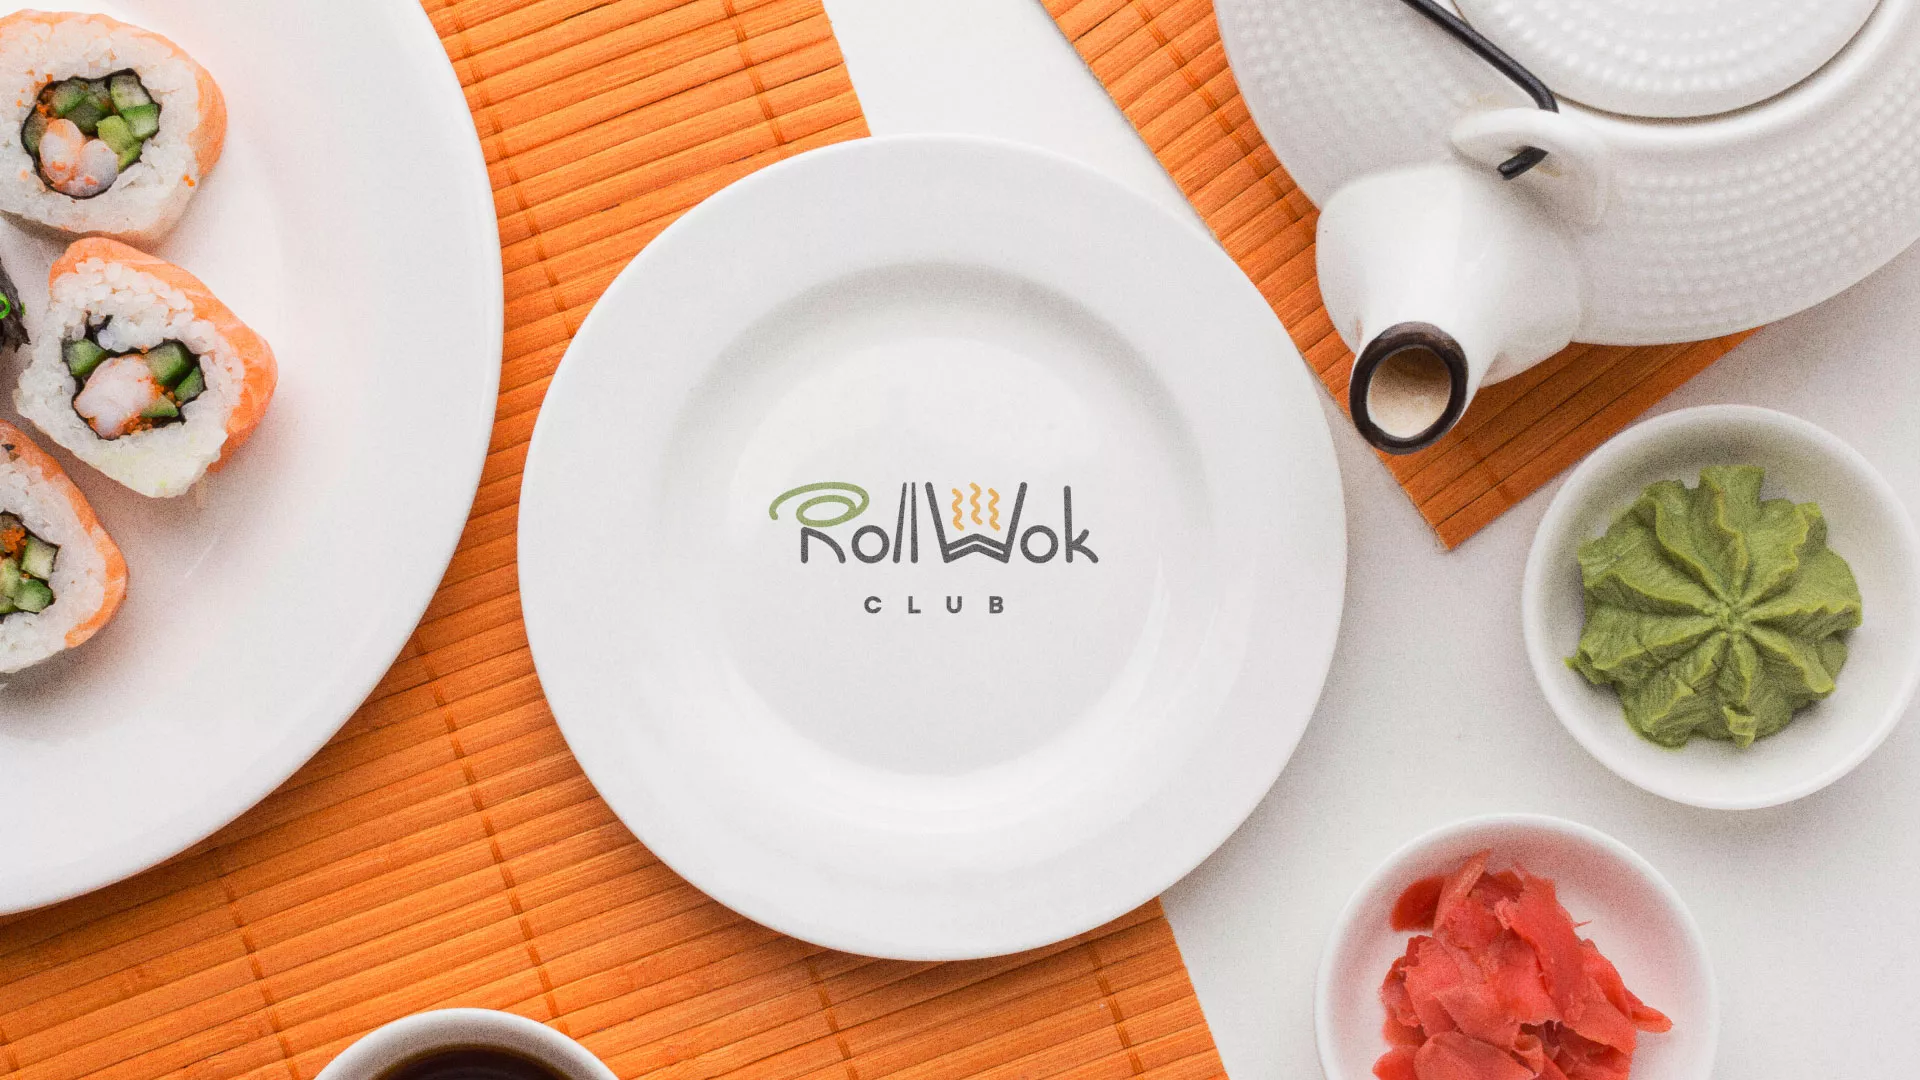 Разработка логотипа и фирменного стиля суши-бара «Roll Wok Club» в Томари